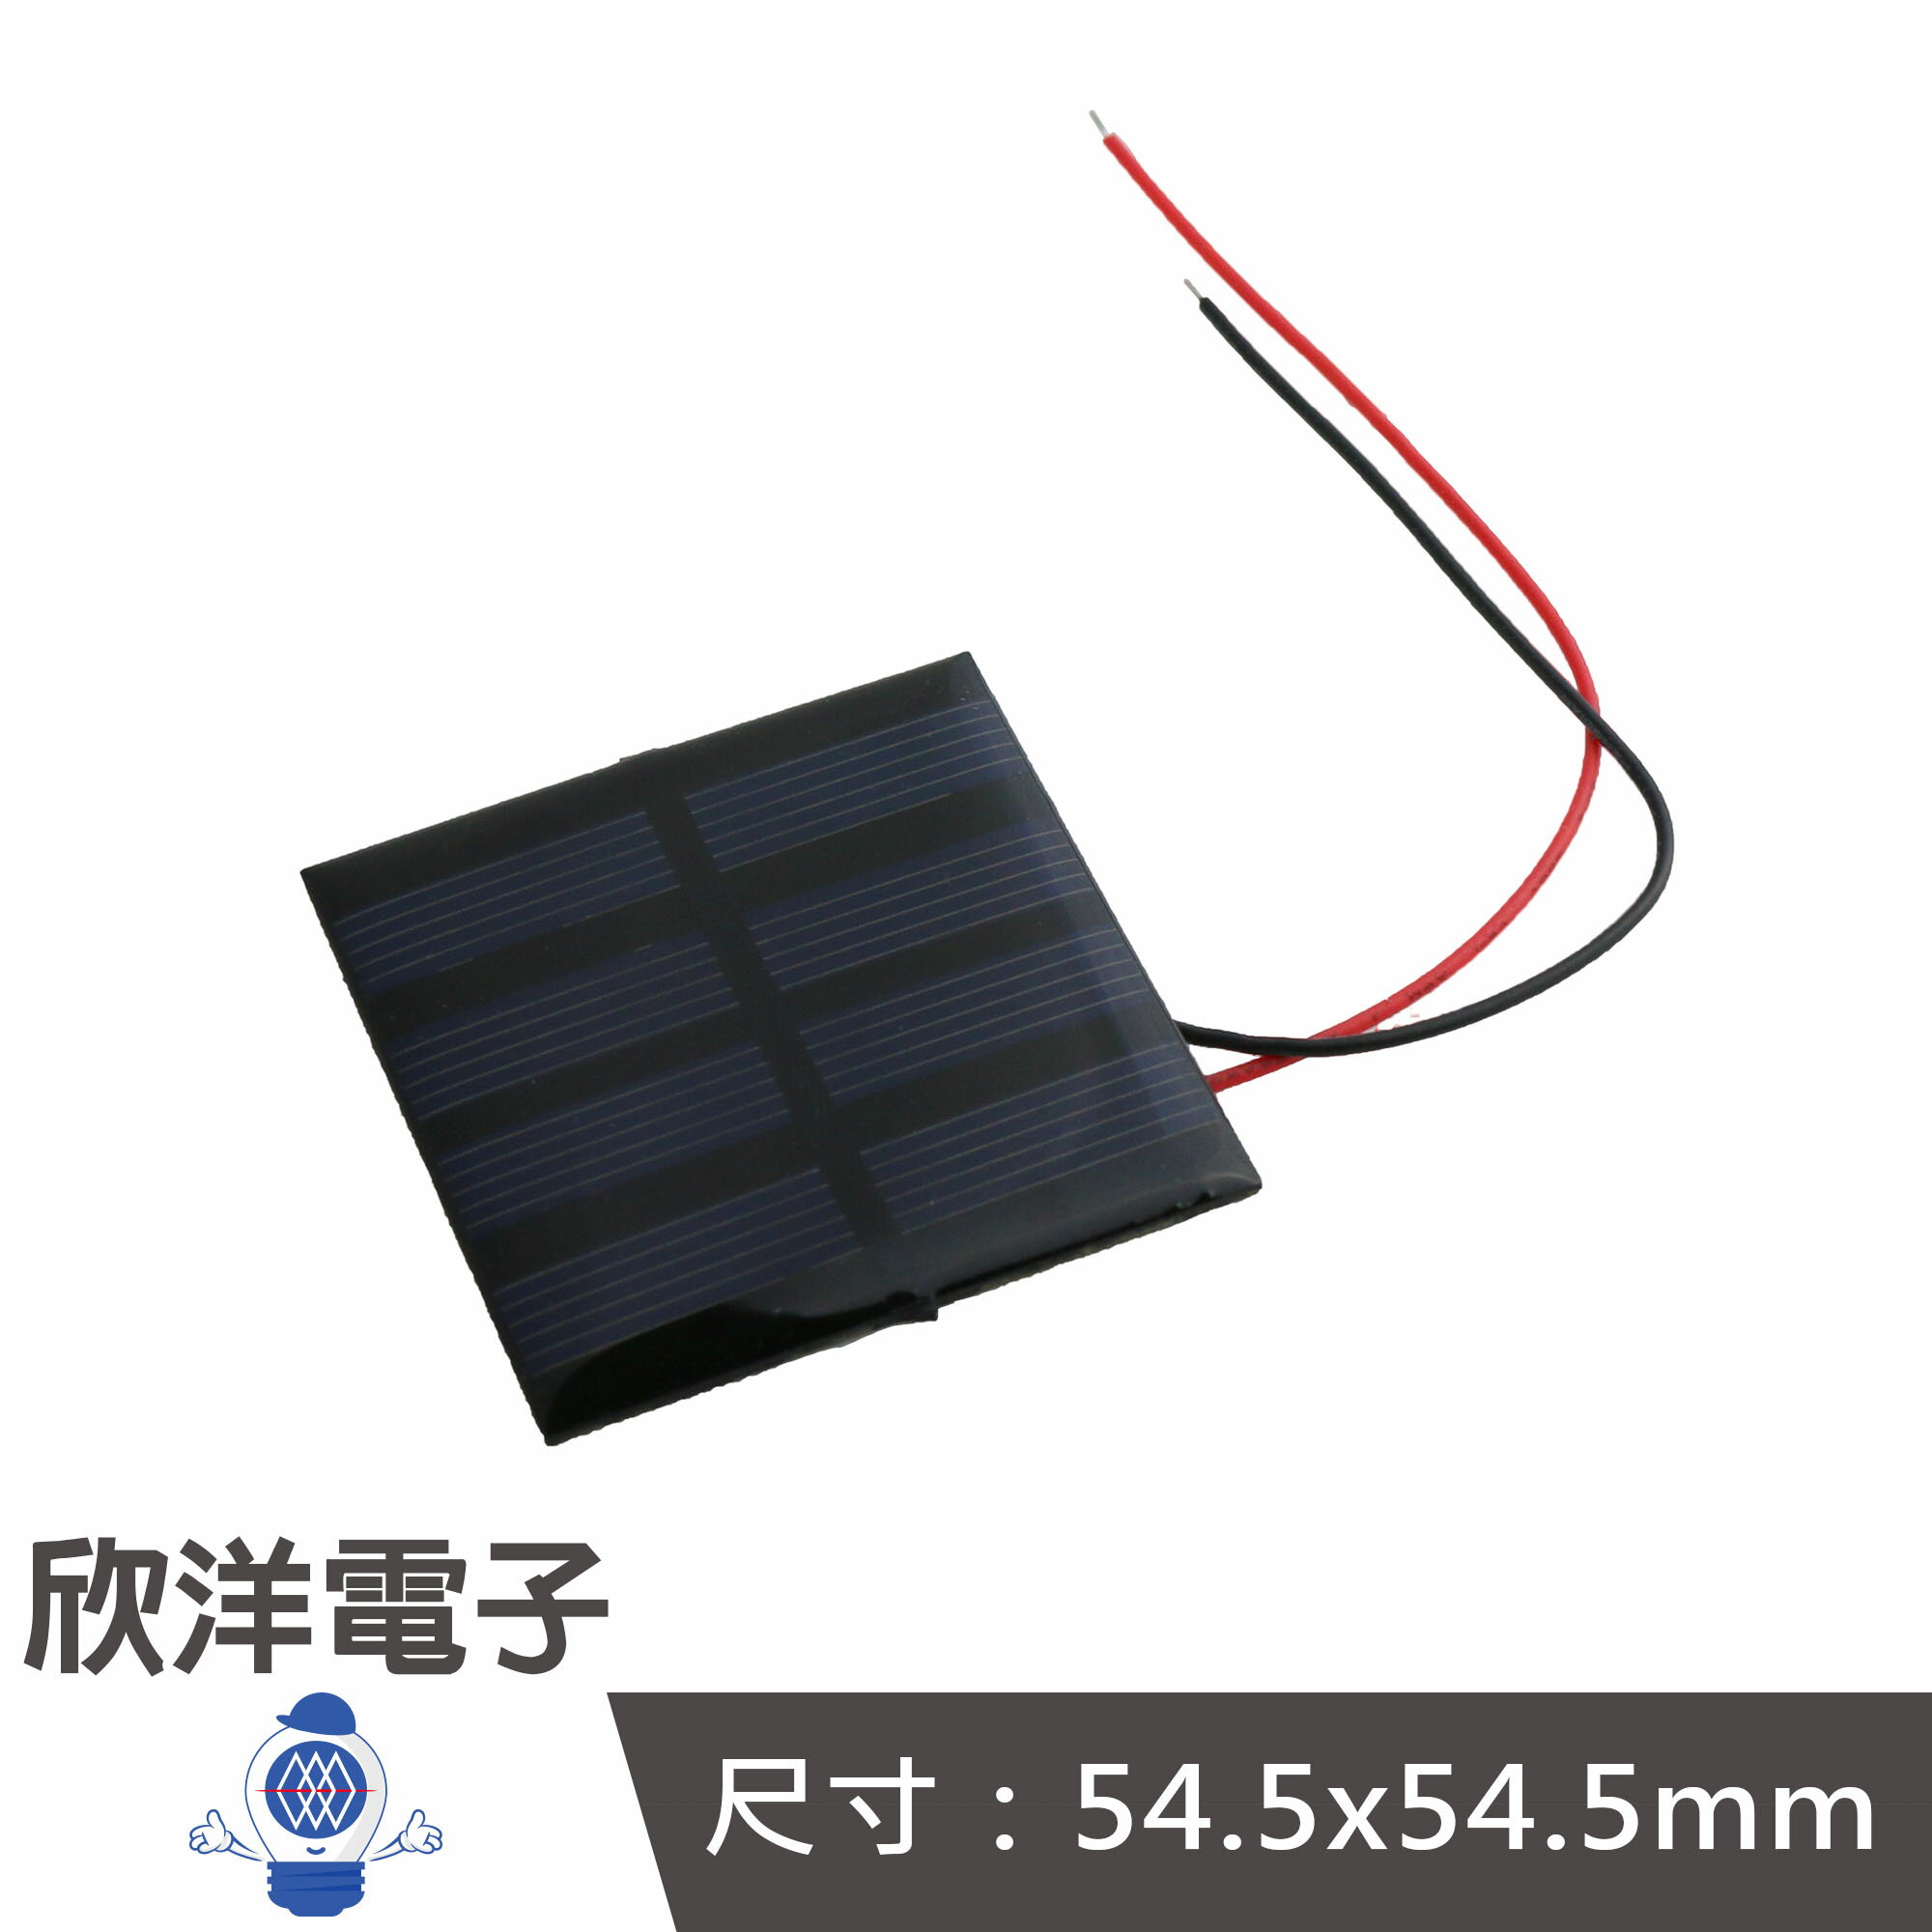 ※ 欣洋電子 ※ 2V 150mA 54.5x54.5mm 太陽能板(1116B) #實驗室、學生模組、電子材料、電子工程、適用Arduino#